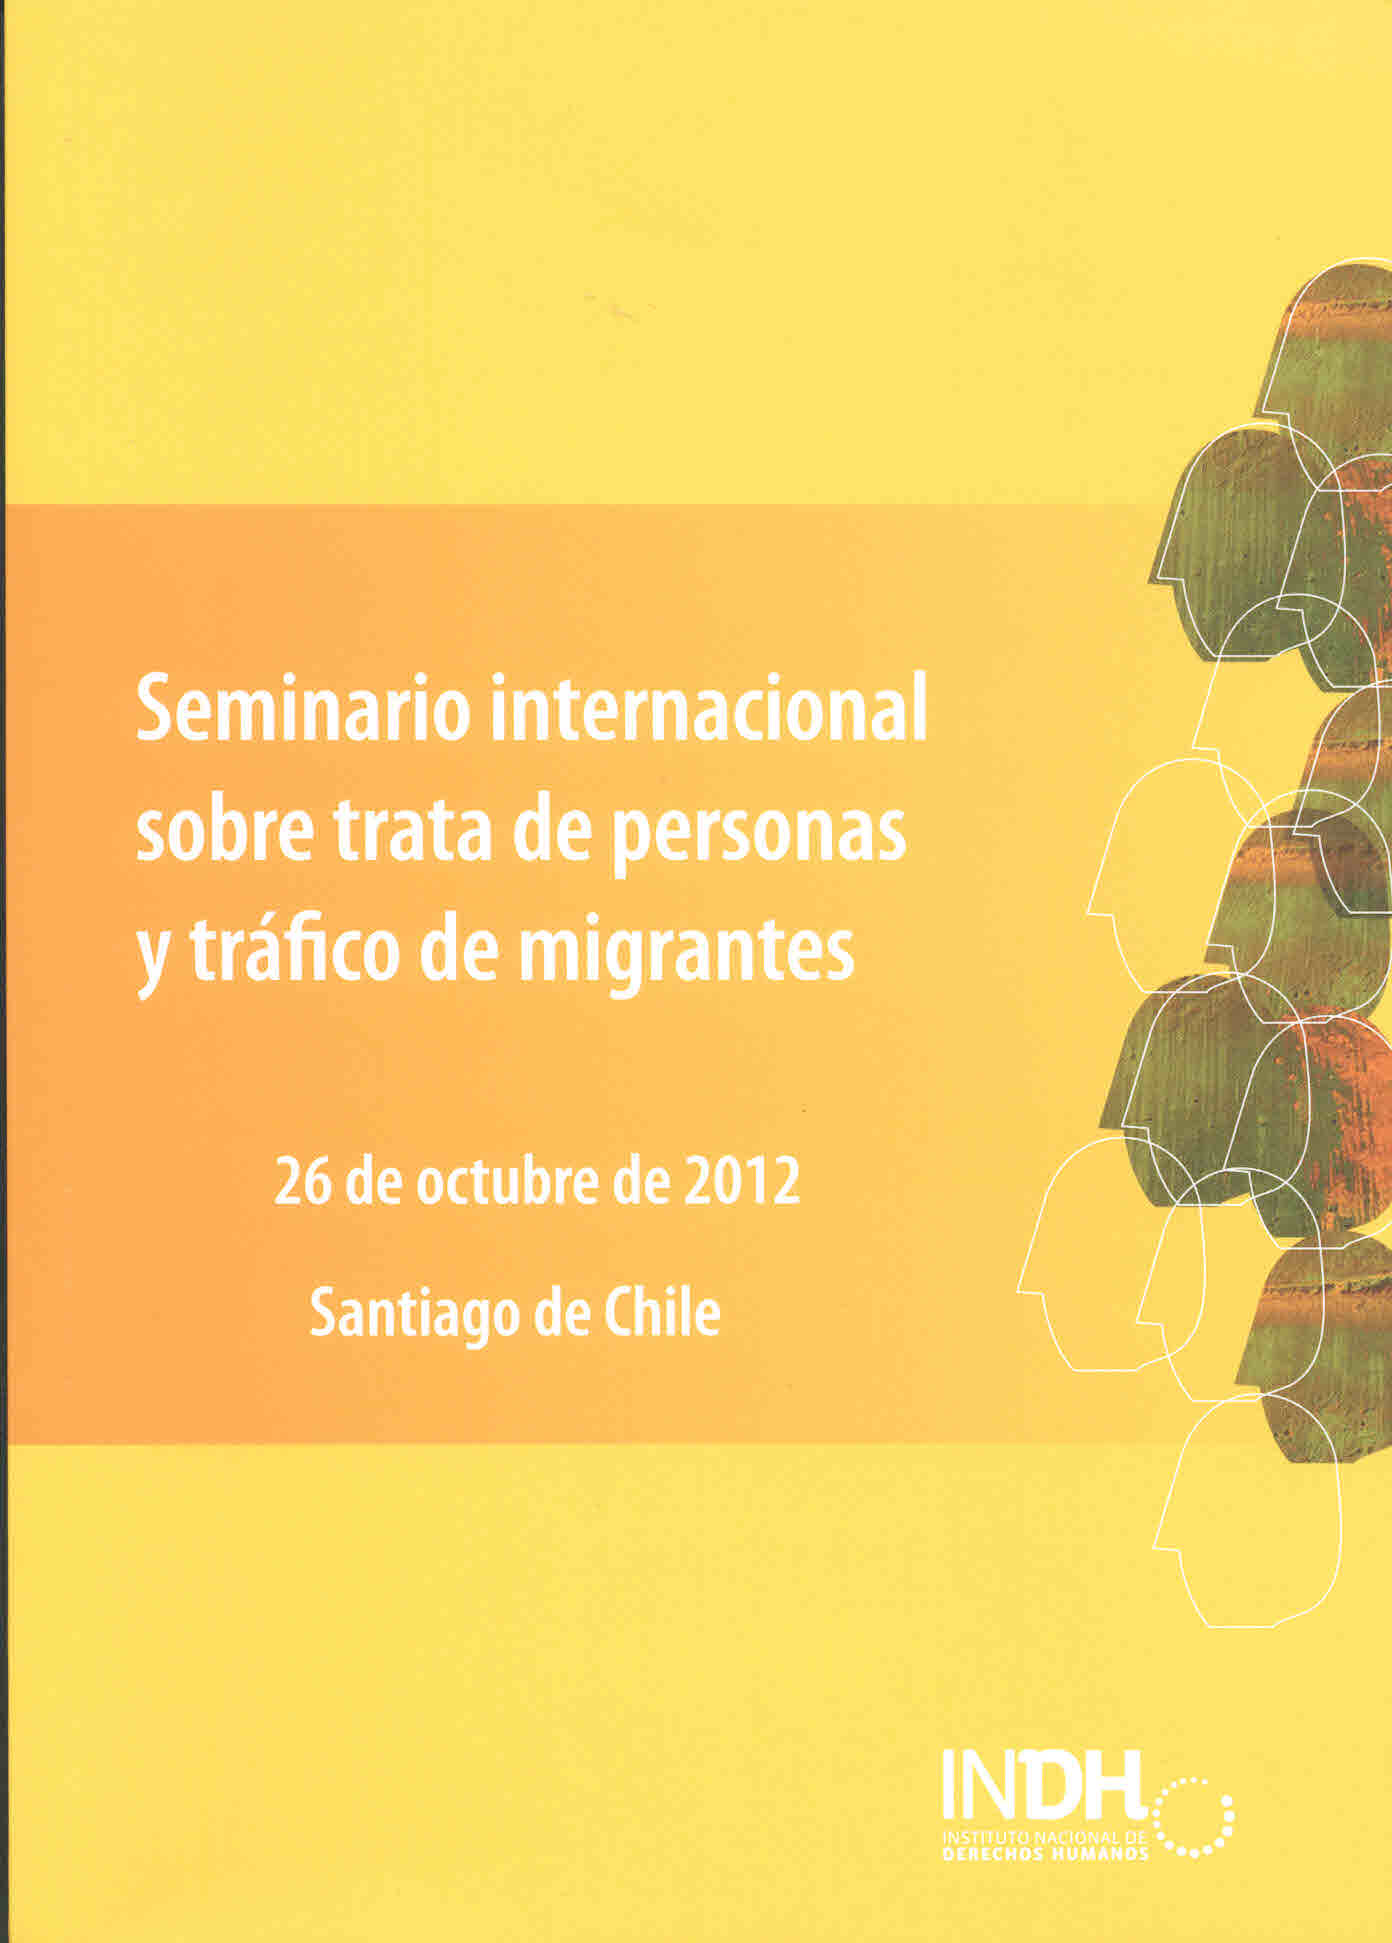 Seminario internacional sobre trata de personas y tráfico de migrantes